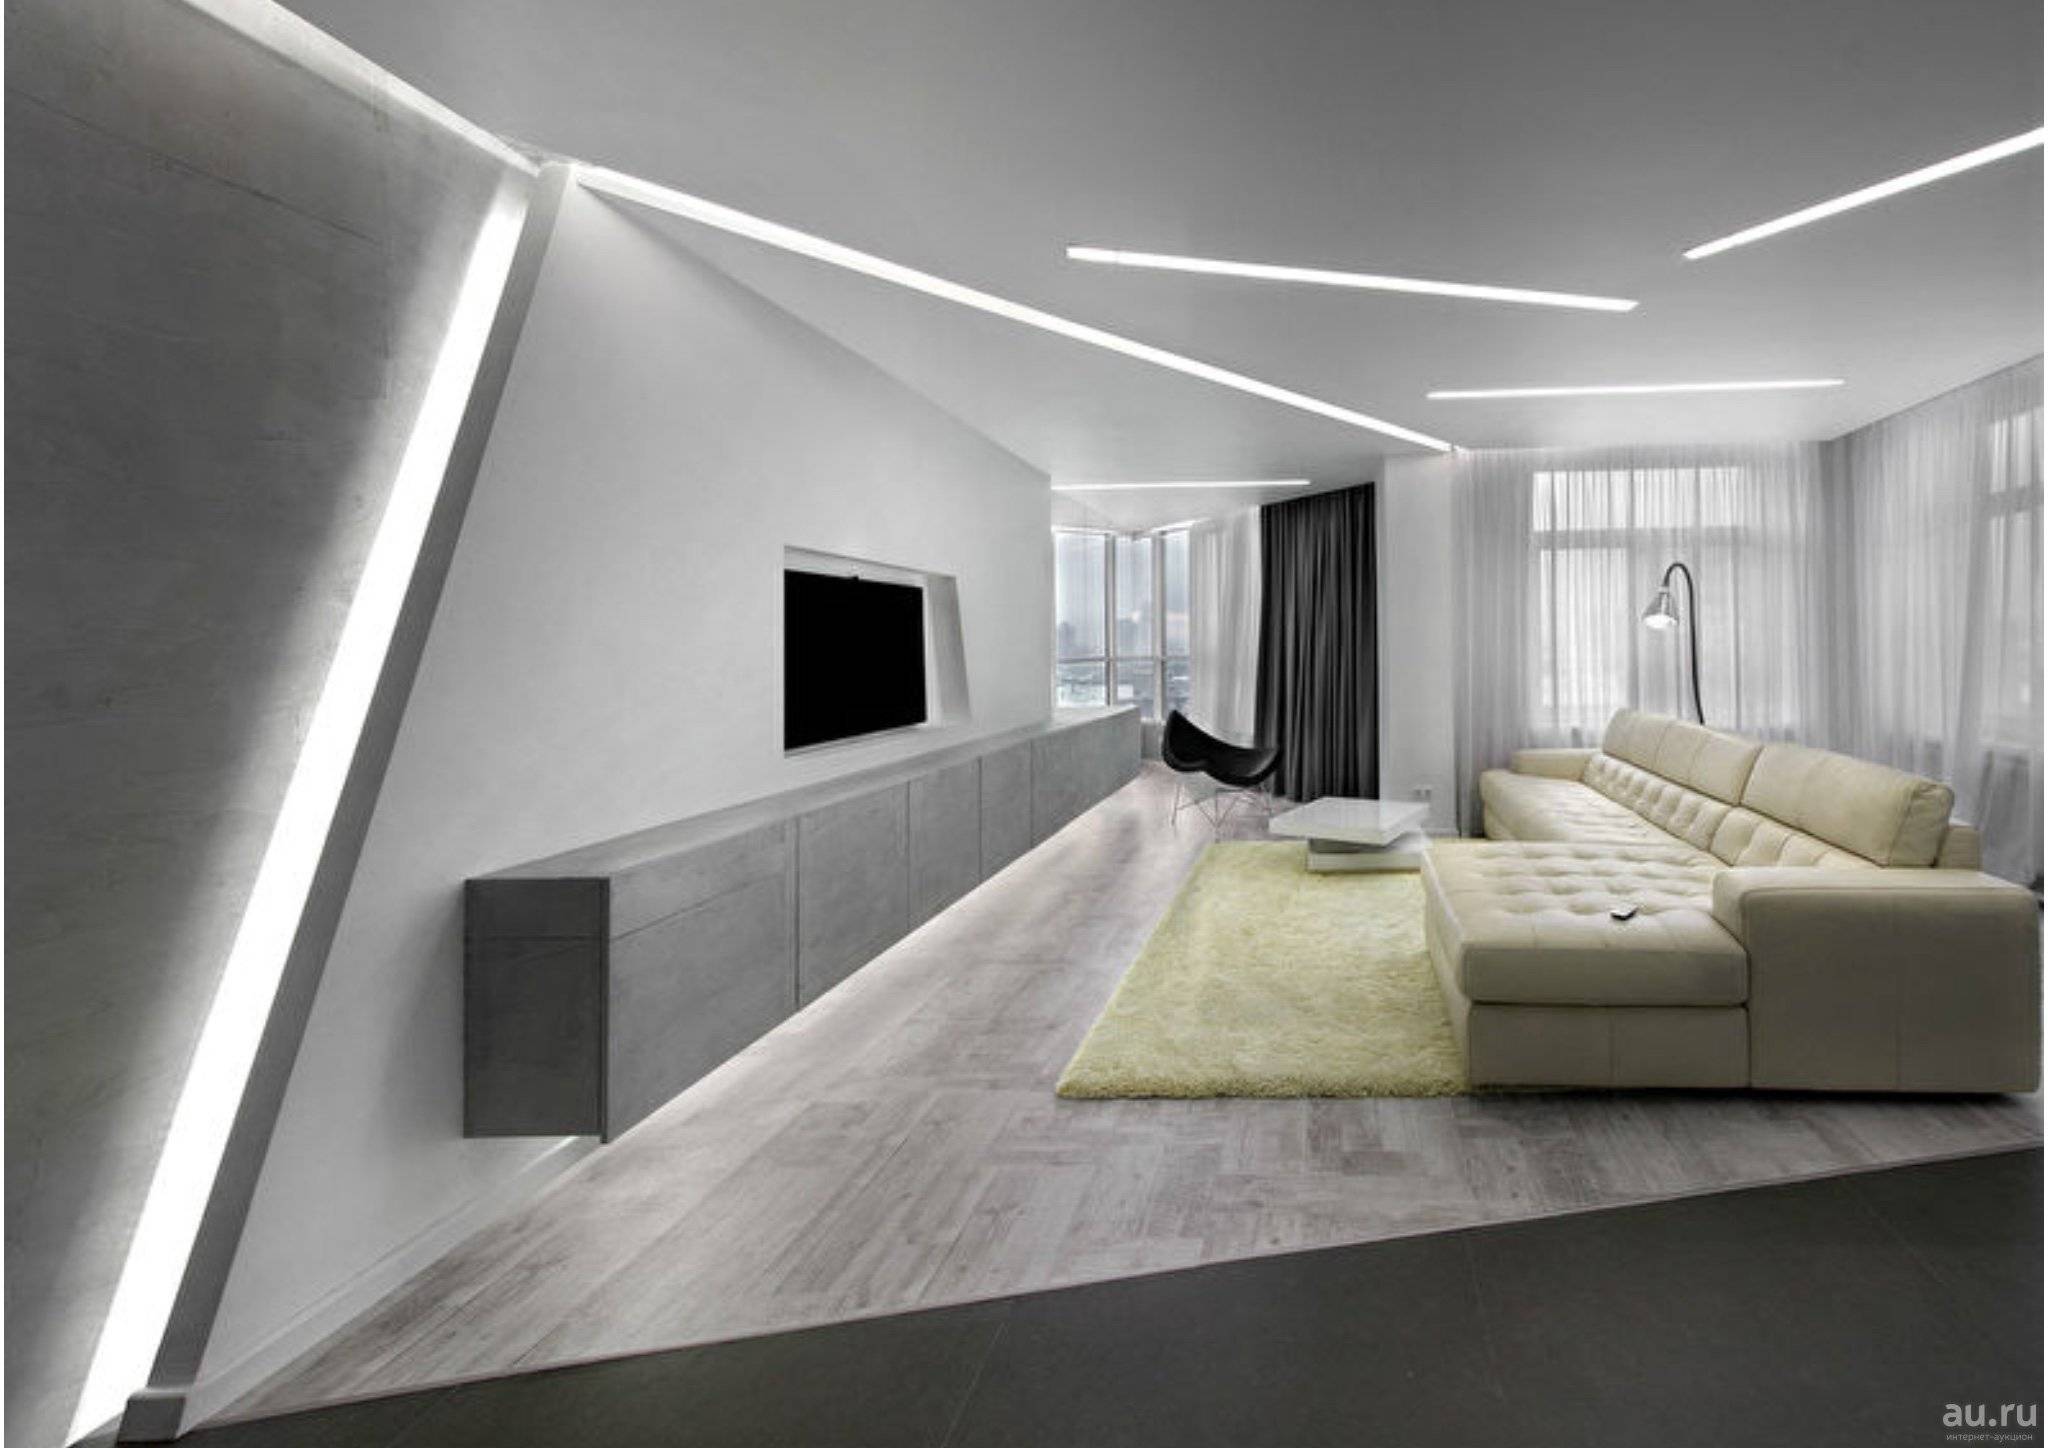 Современный интерьер в стиле минимализм: как обустроить малогабаритную квартиру, какую мебель выбрать